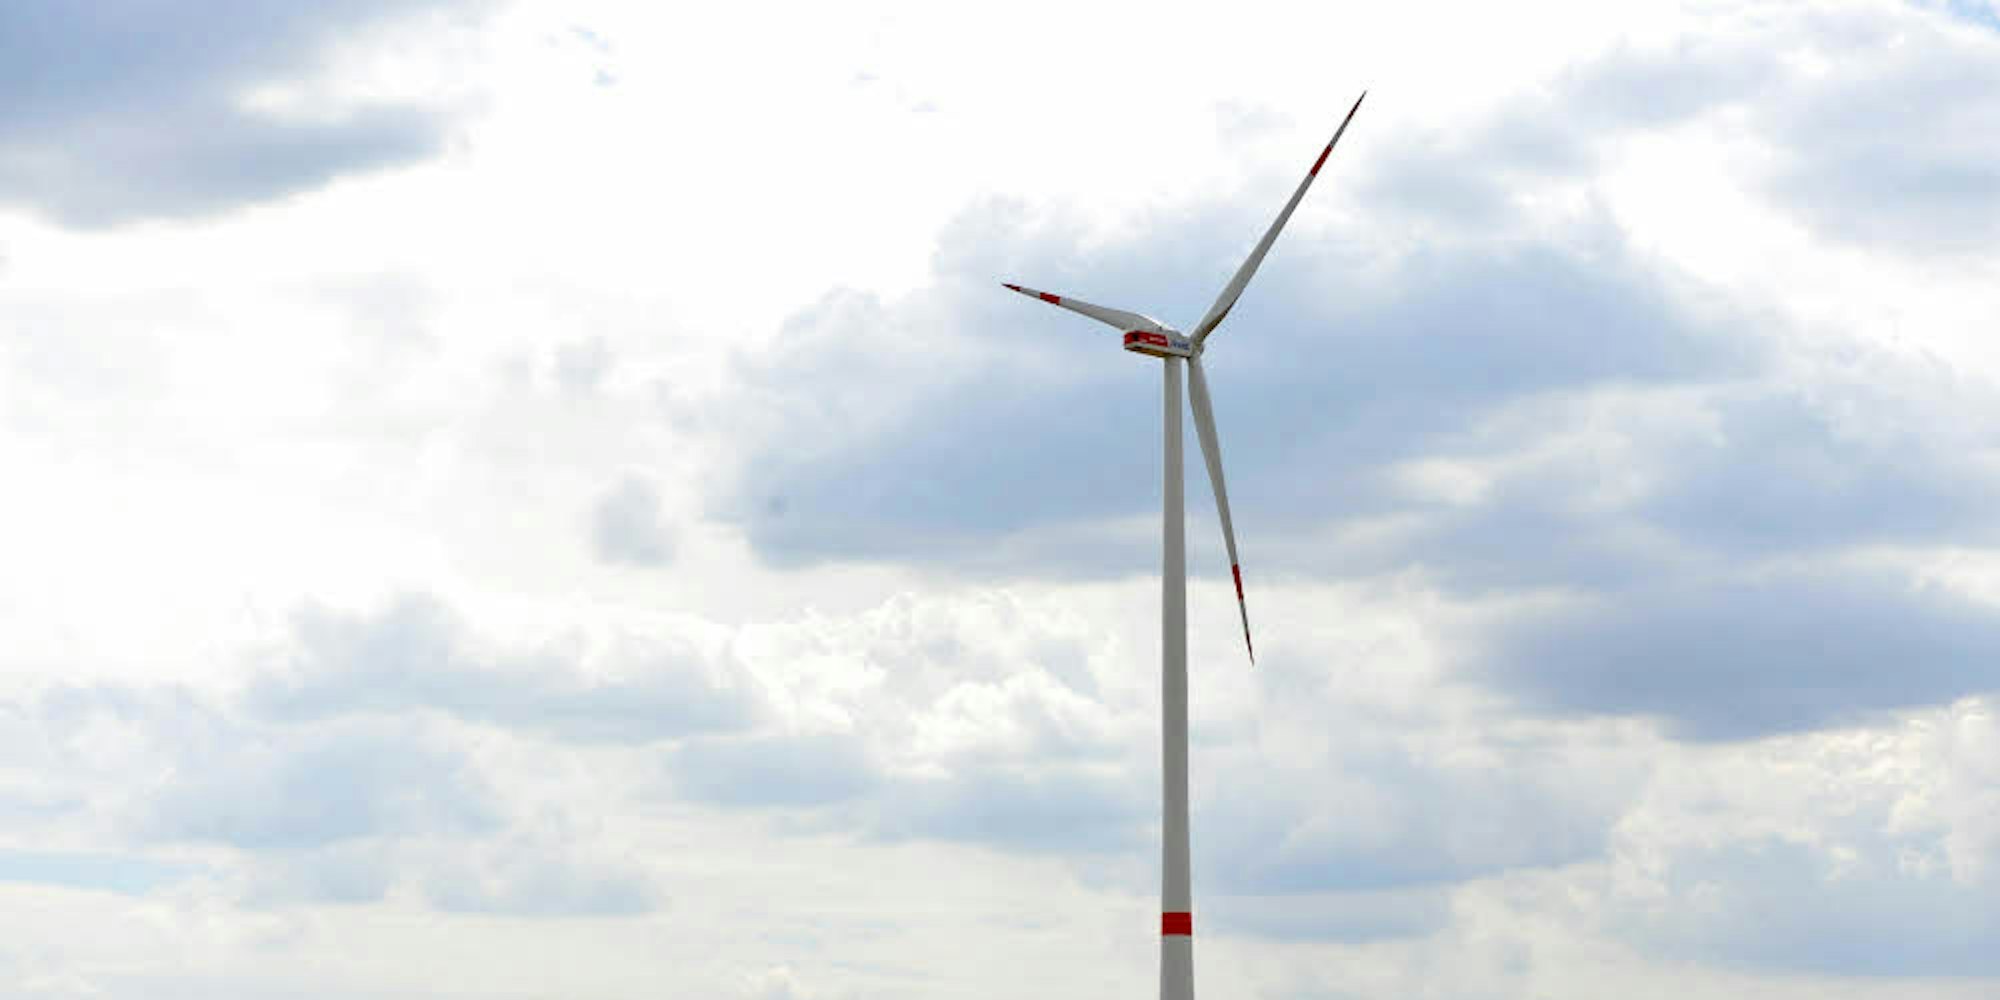 Windenergie wird künftig auch in Knapsack genutzt.